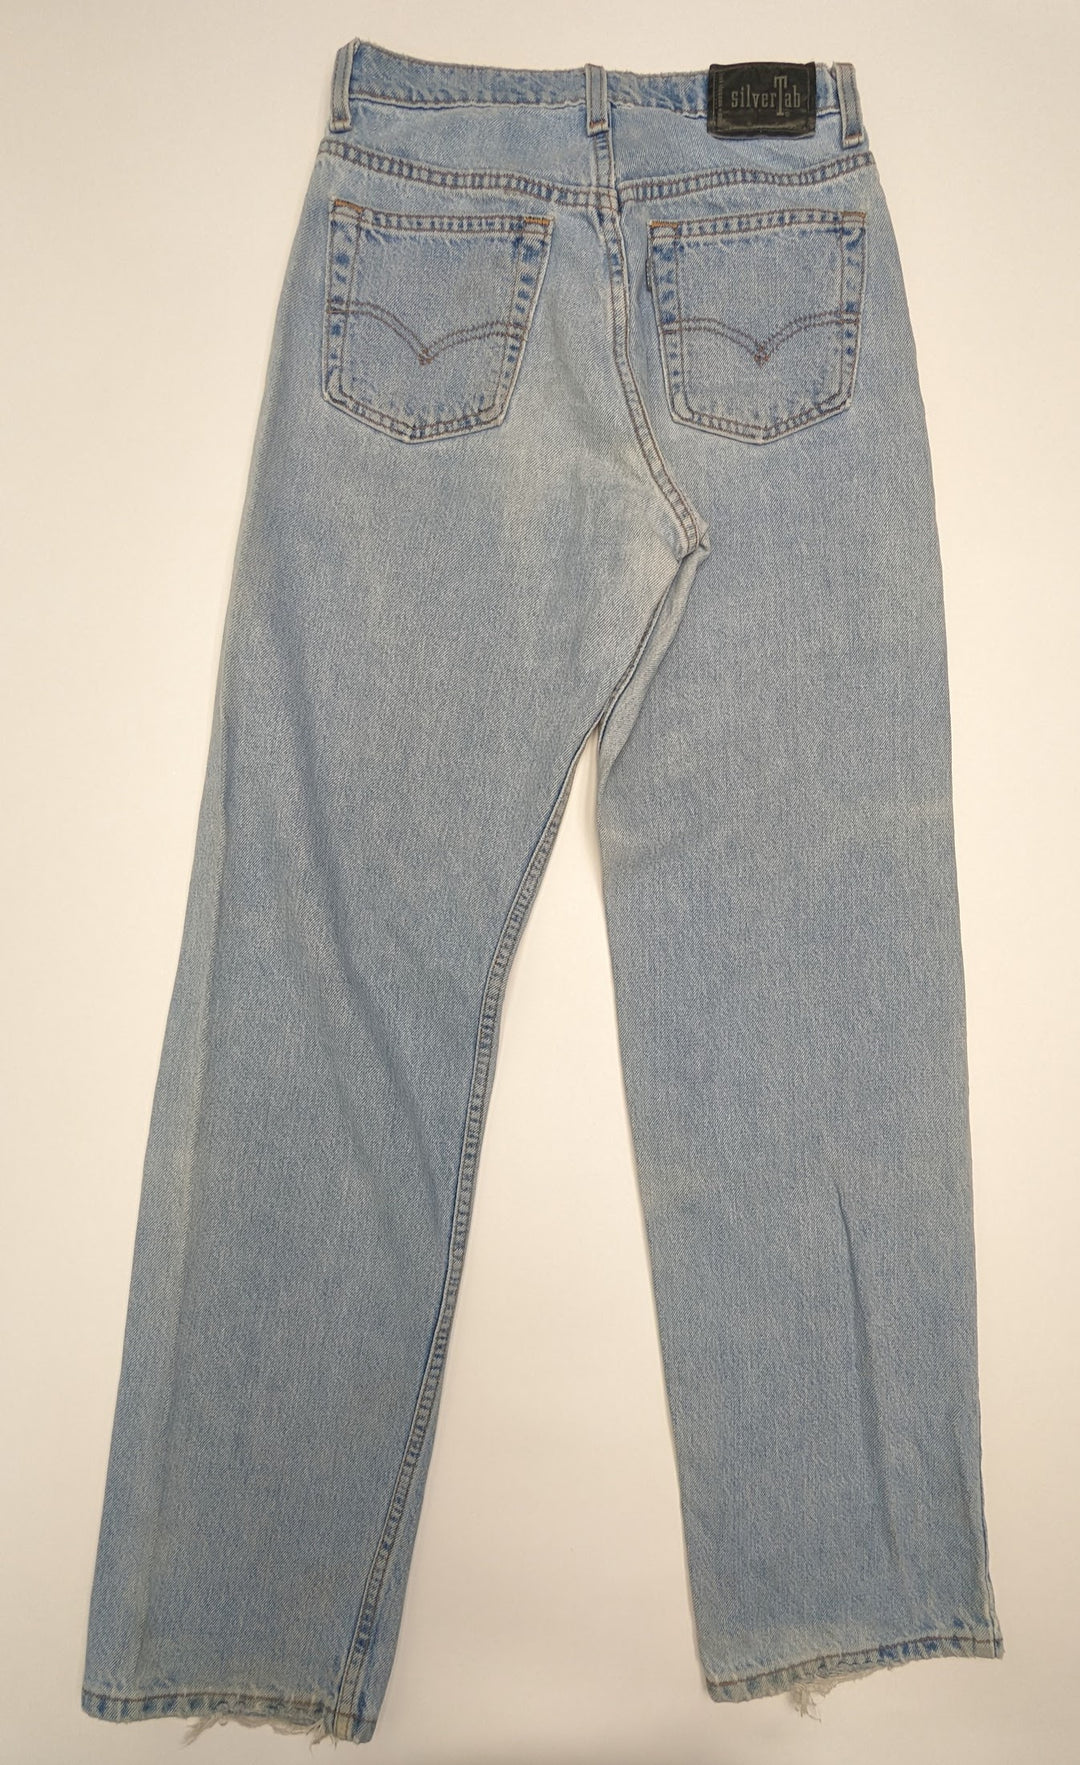 Levis Silvertab Jeans 1 pc 1 lb C0124208 - Raghouse